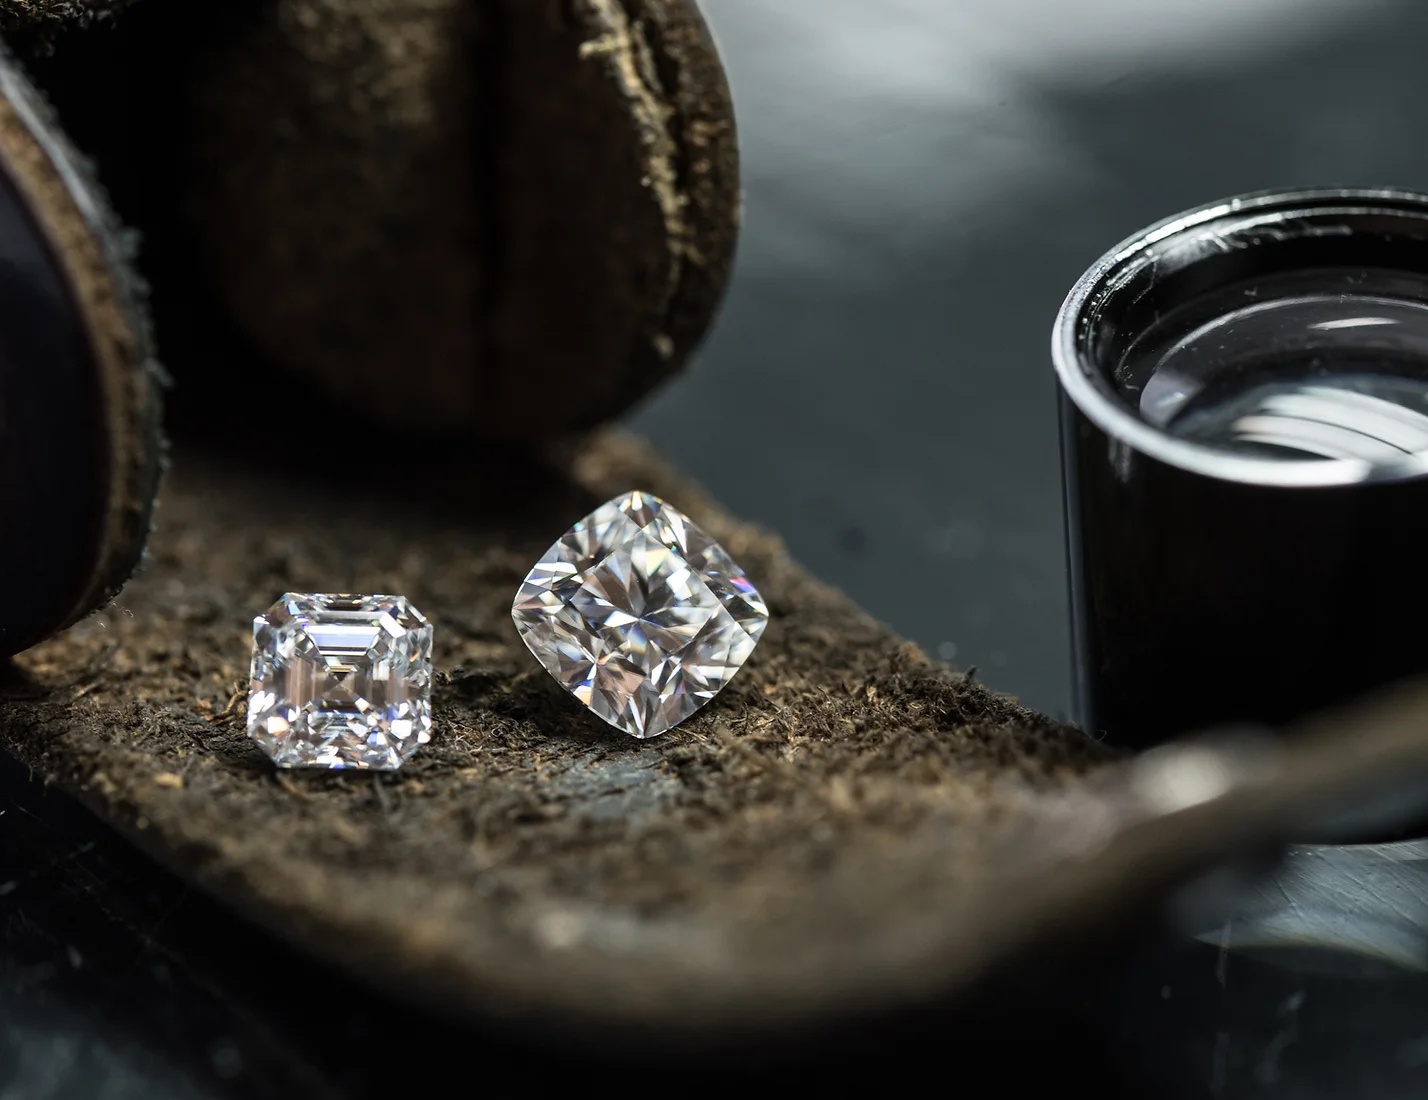 Explore Diamond Jewelry Collection